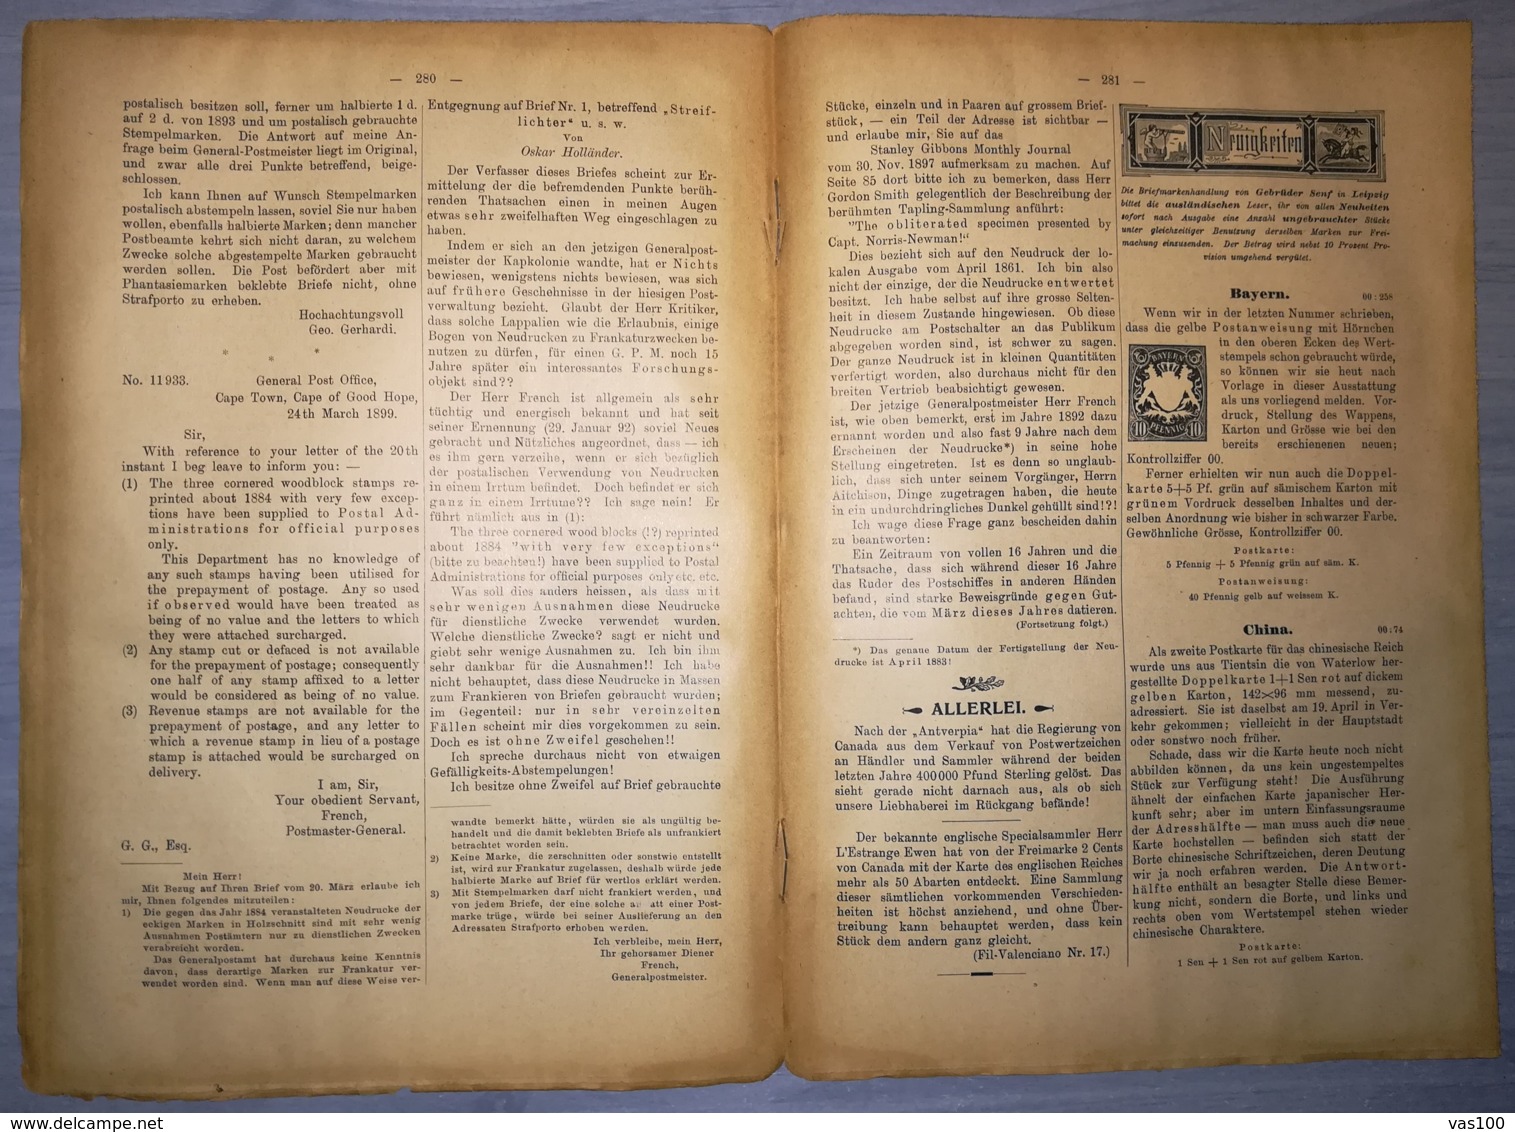 ILLUSTRATED STAMPS JOURNAL- ILLUSTRIERTES BRIEFMARKEN JOURNAL MAGAZINE, LEIPZIG, NR 13, JULY 1900, GERMANY - Allemand (jusque 1940)